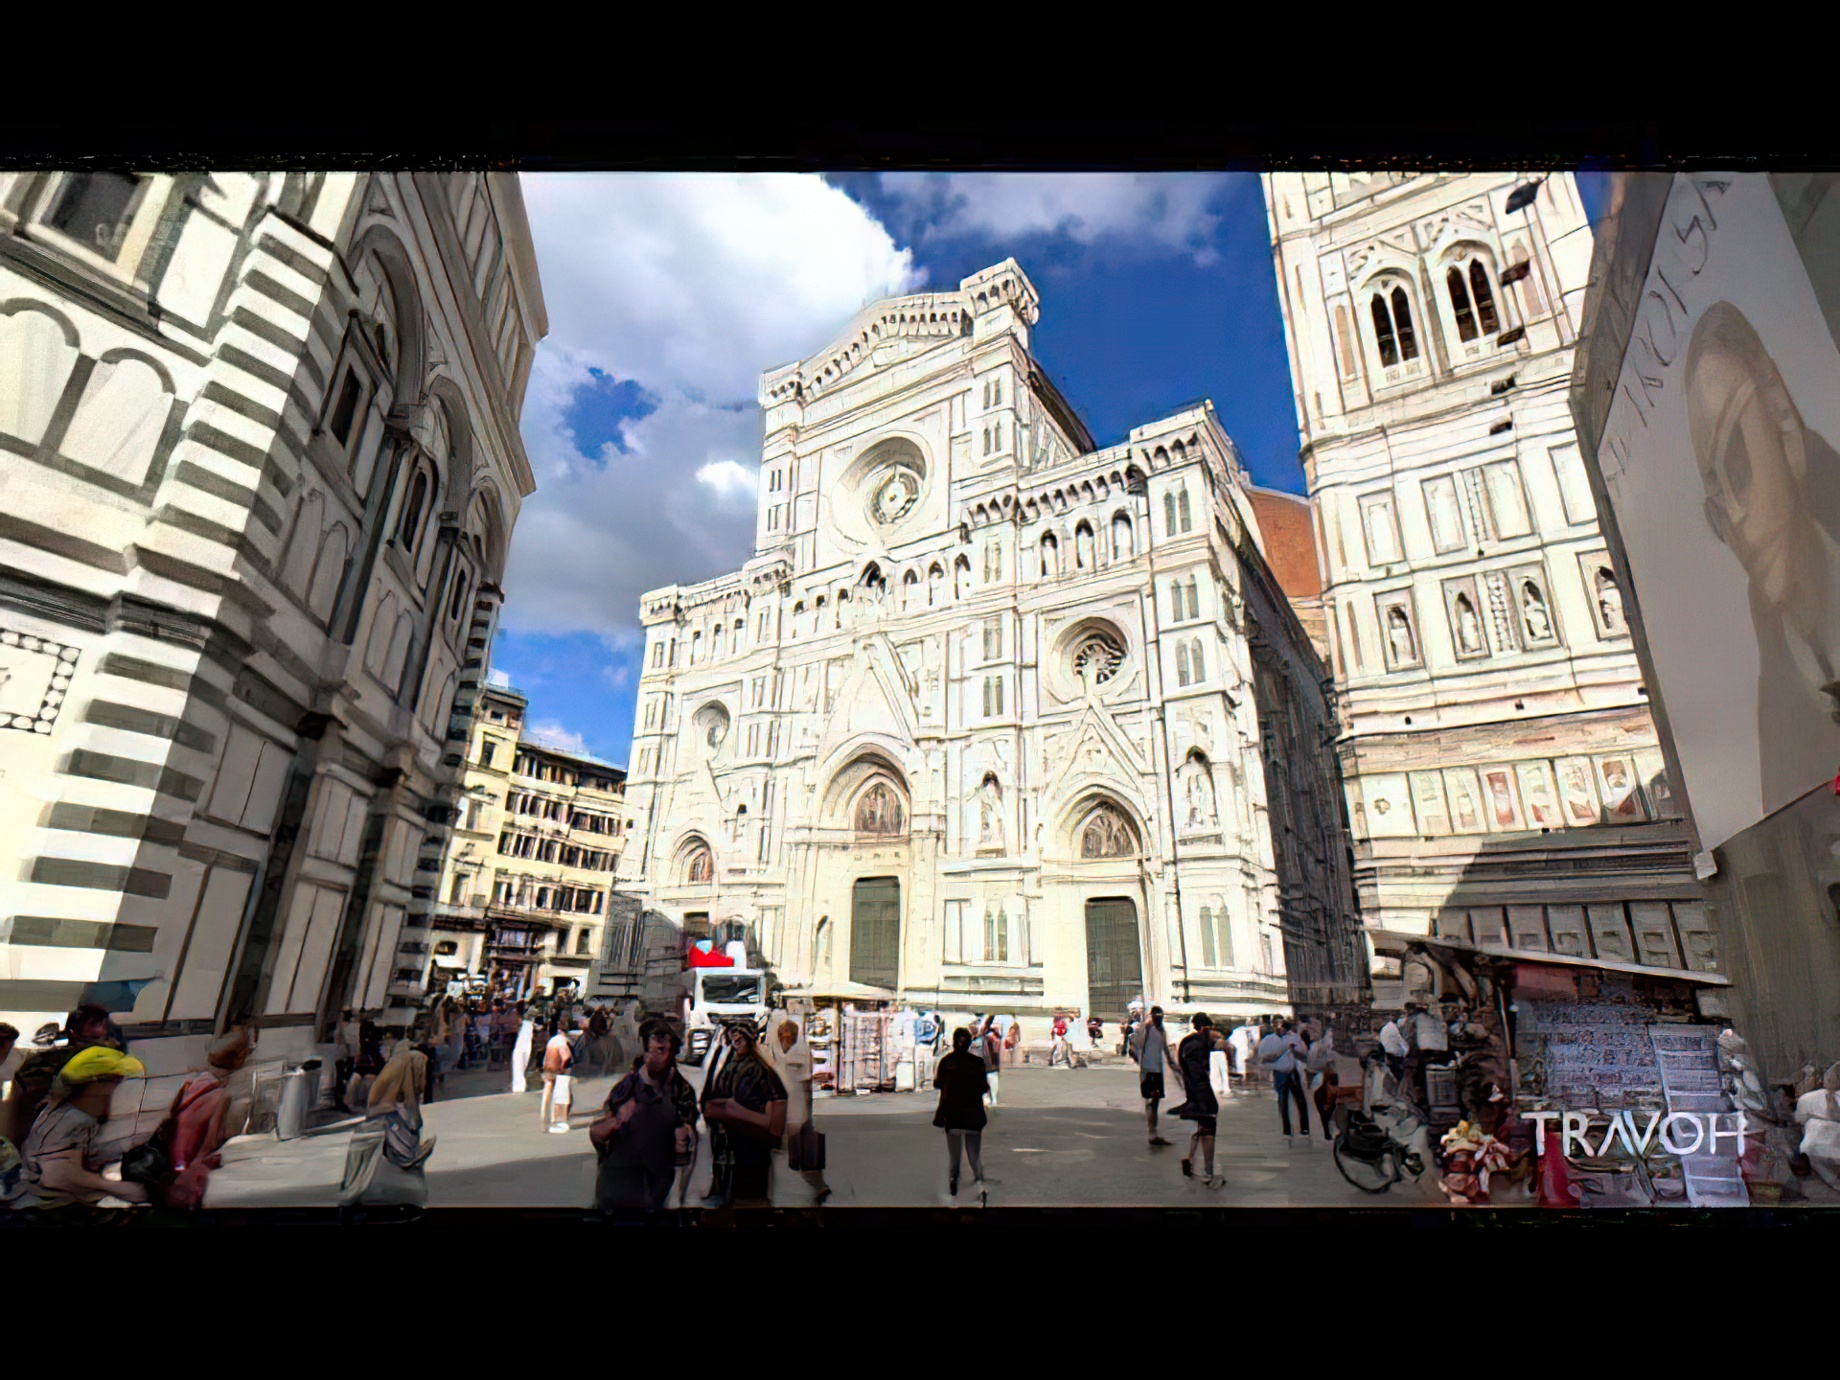 Piazza di San Giovanni - Piazza del Duomo - Cathedral of Santa Maria del Fiore - Florence, Italy